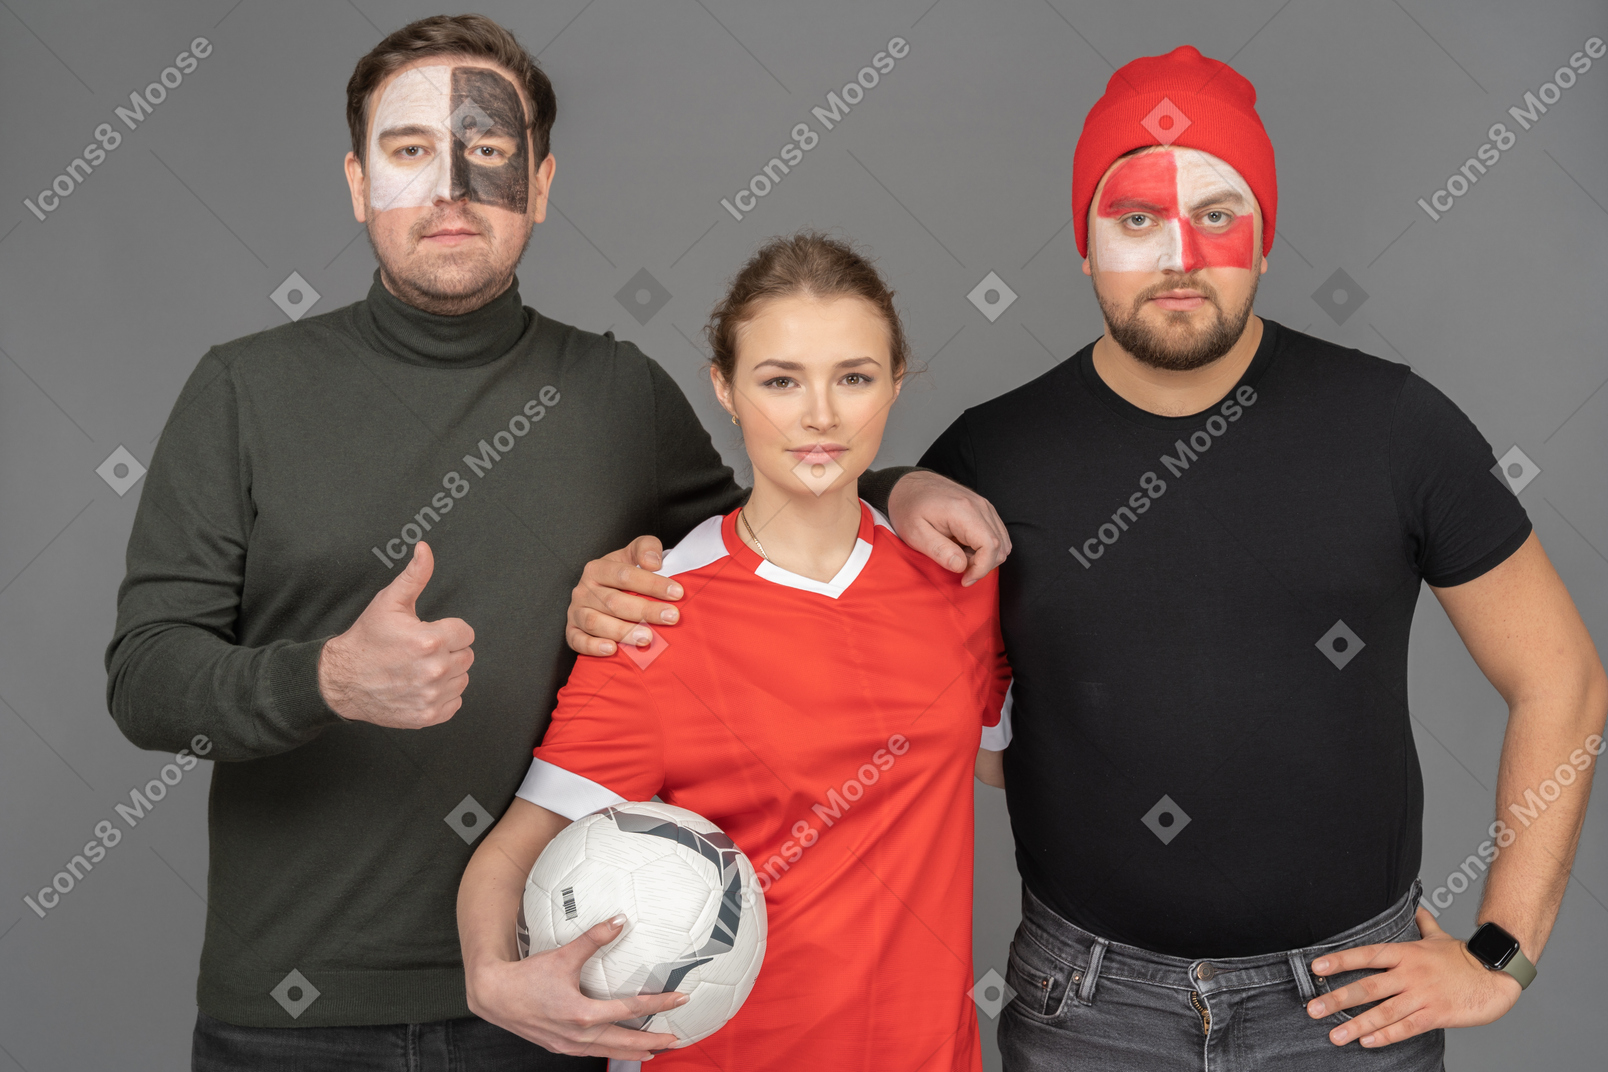 Портрет двух футбольных фанатов мужского пола с футболисткой